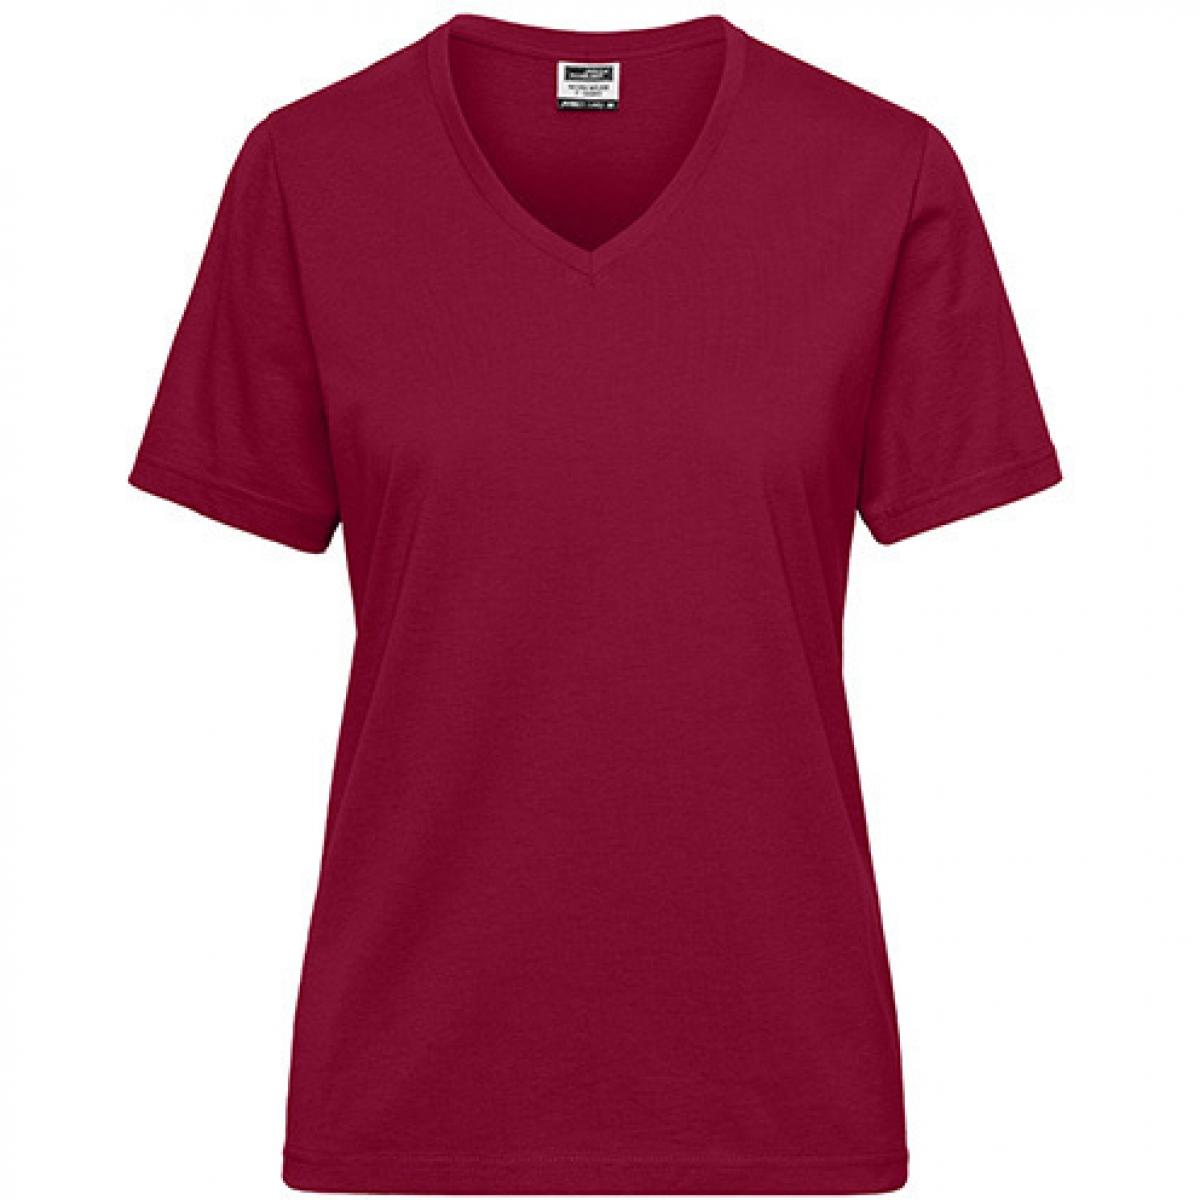 Hersteller: James+Nicholson Herstellernummer: JN1807 Artikelbezeichnung: Ladies‘ BIO Workwear T-Shirt / Damen T-Shirt - Waschbar 60C Farbe: Wine